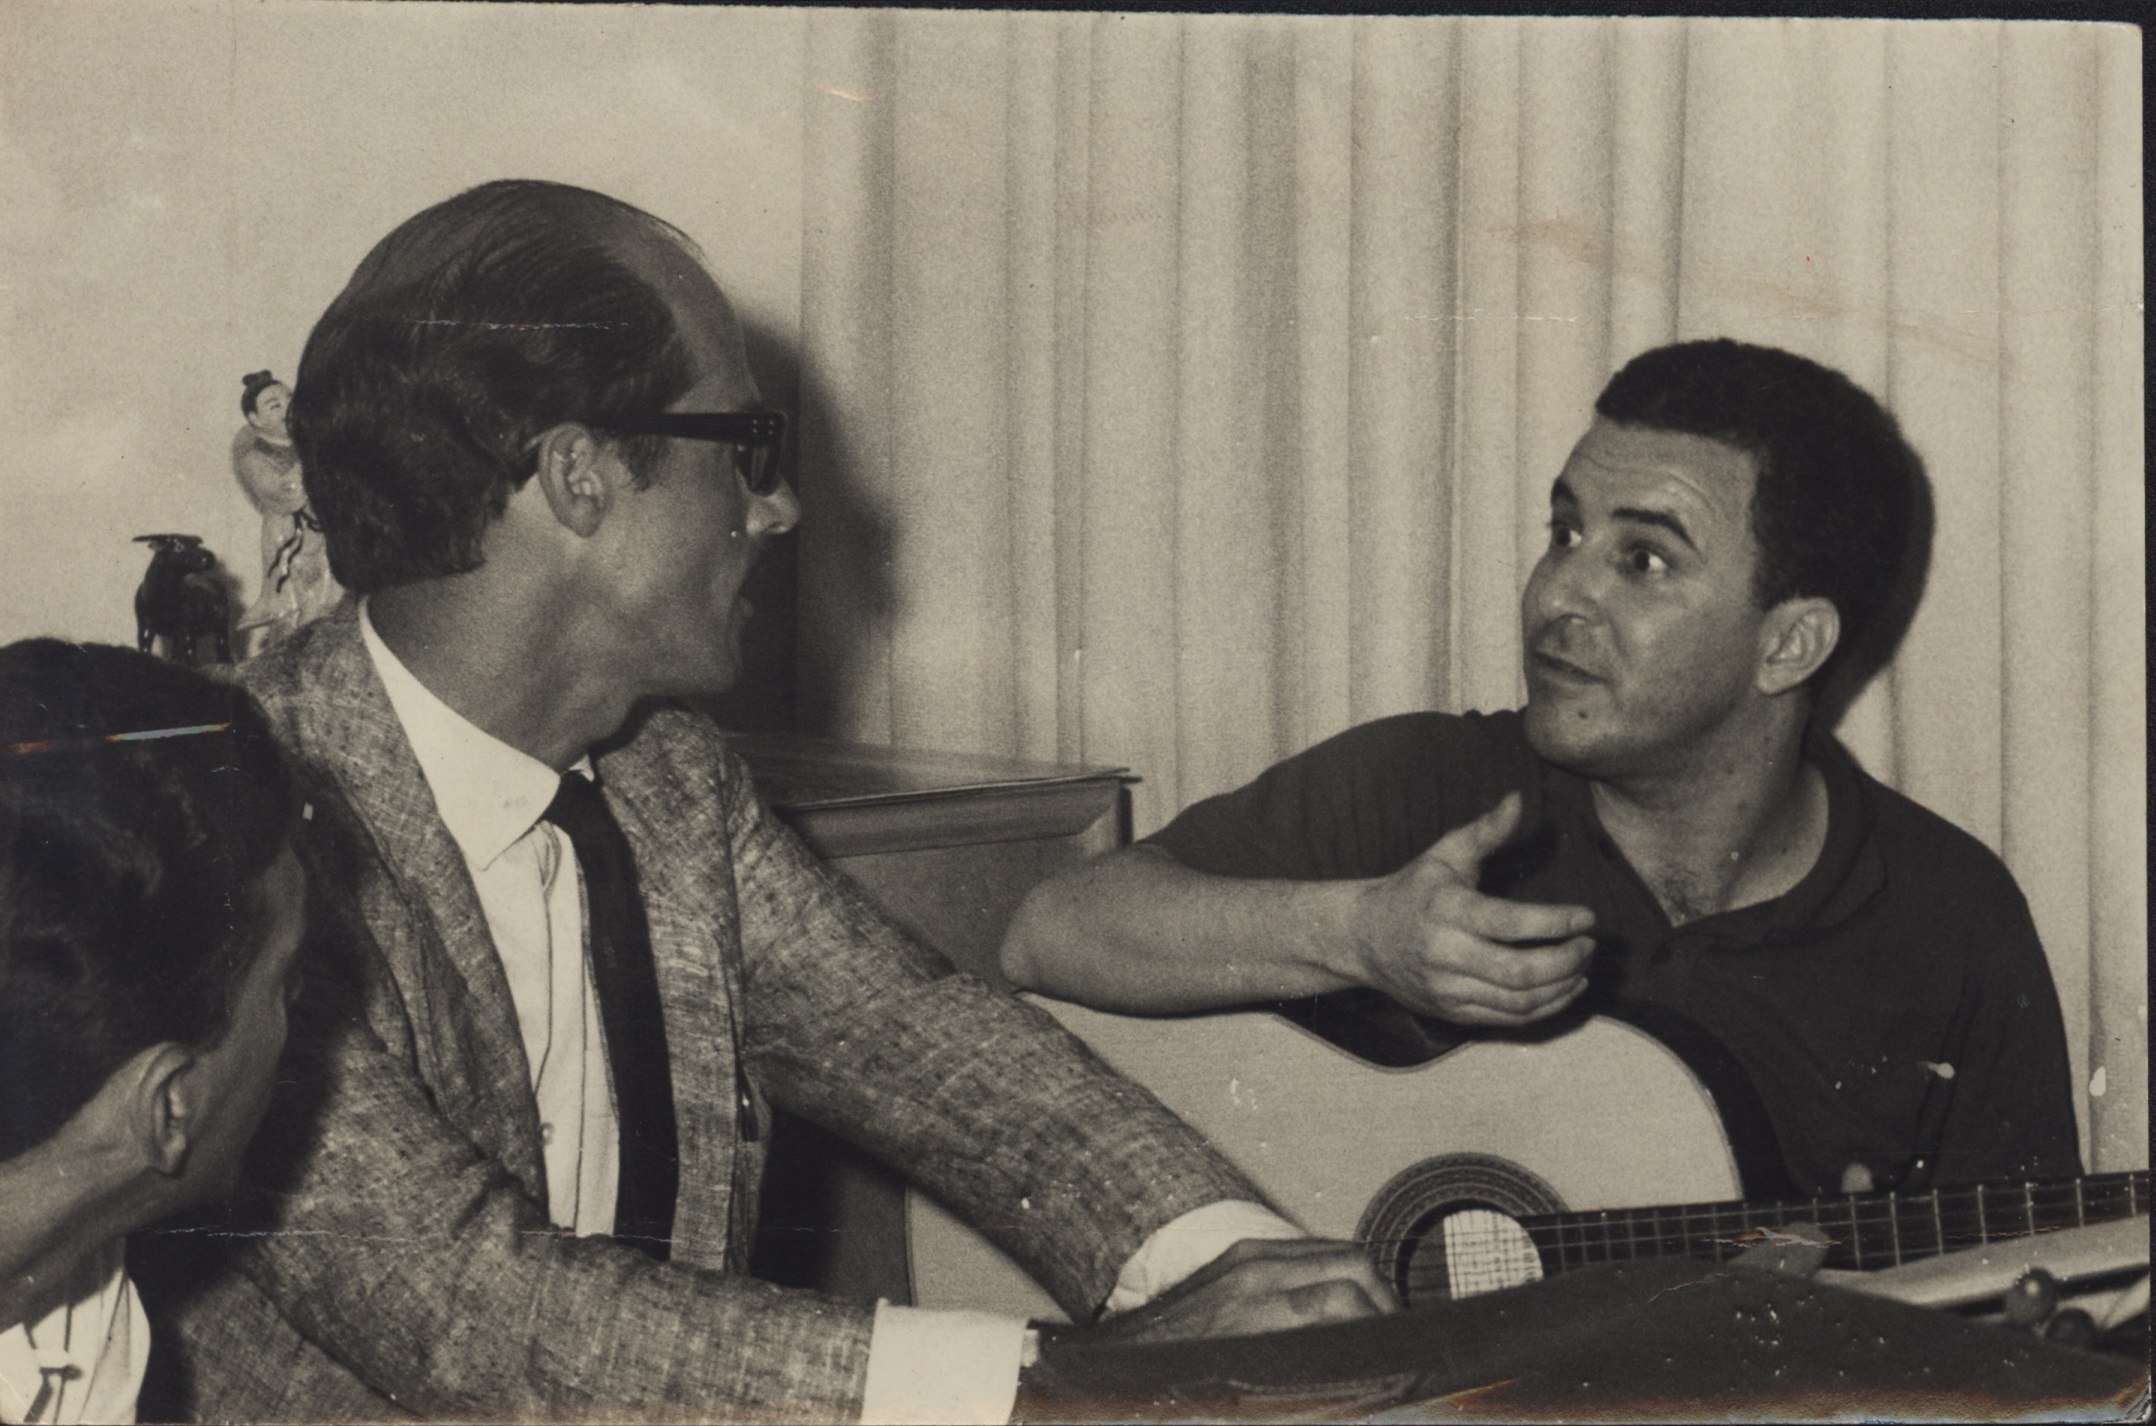     Joao Gilberto (derecha) es un músico brasileño cerrado, extravagante y perfeccionista.  Foto: Archivo EFE/Carlos Coqueijo